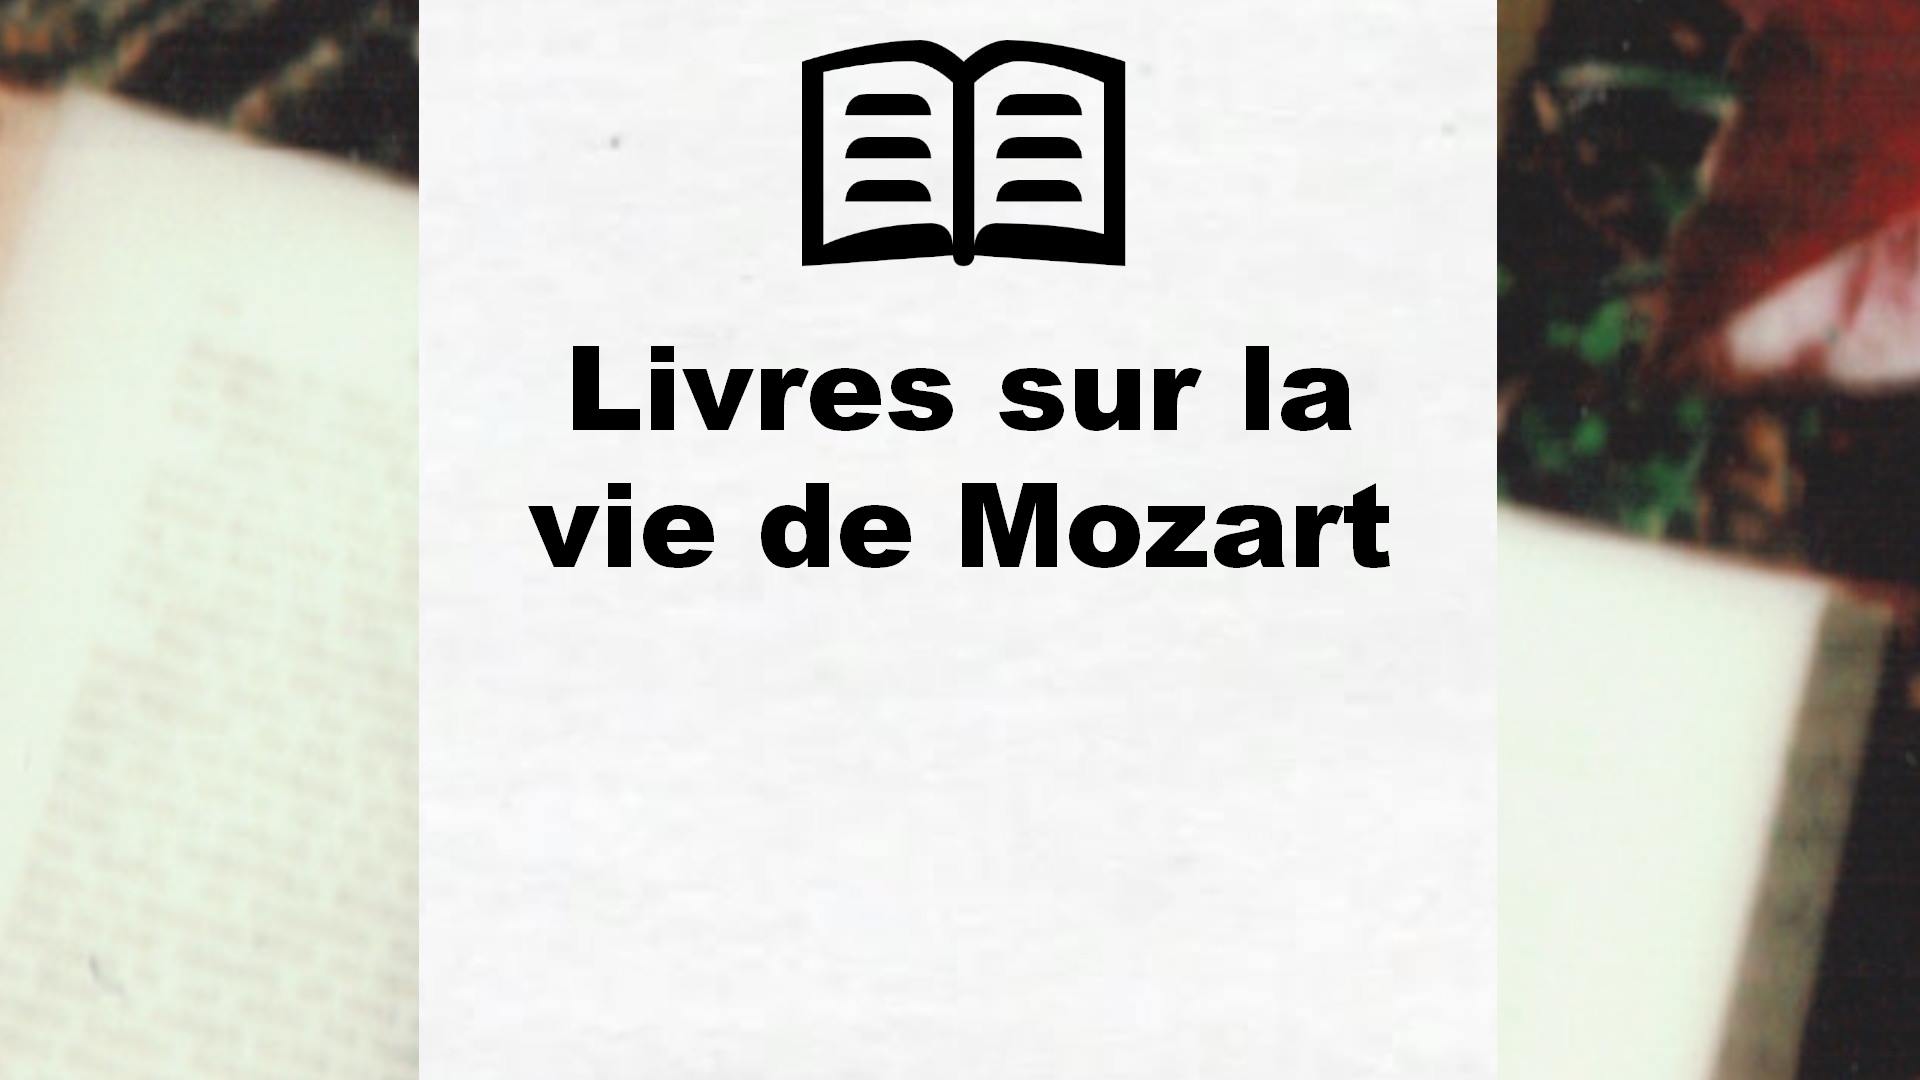 Livres sur la vie de Mozart